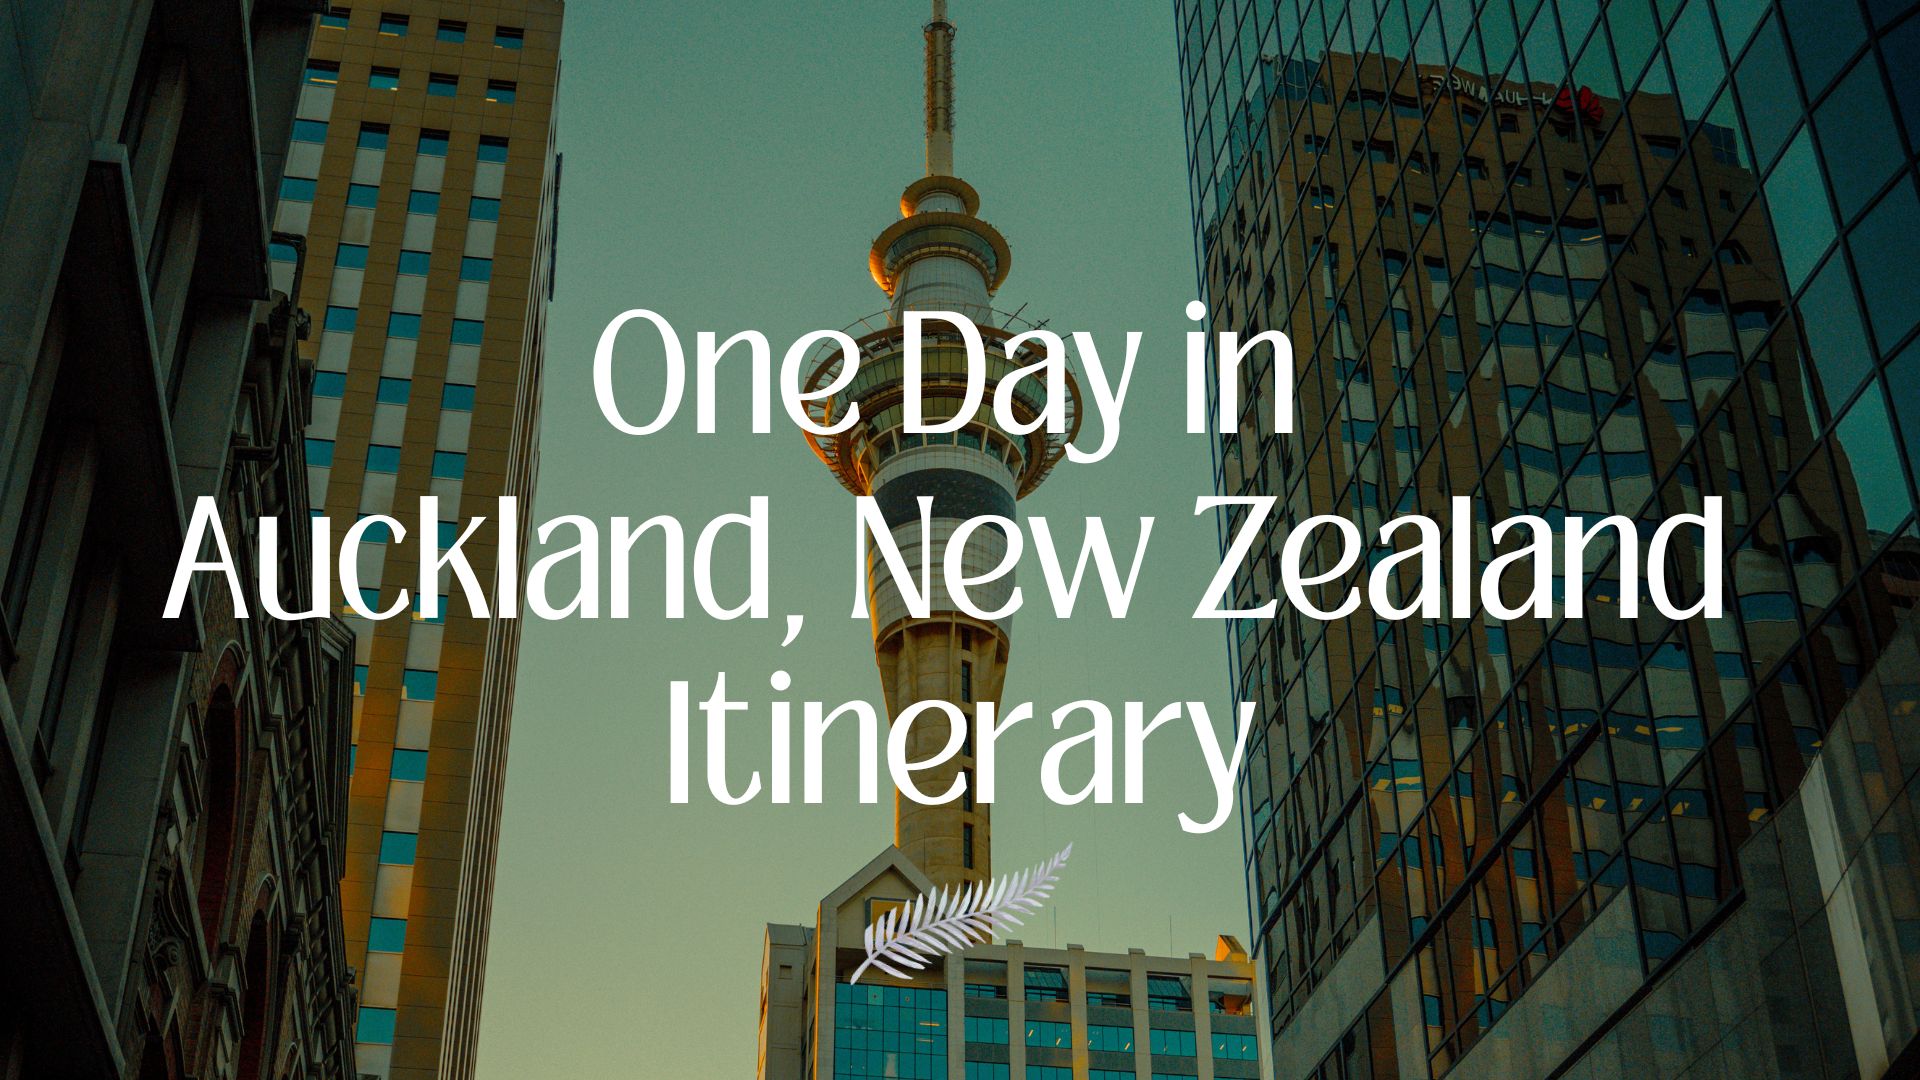 One day in Auckland, Auckland in one day, Auckland in a day, One Day in Auckland Itinerary cover